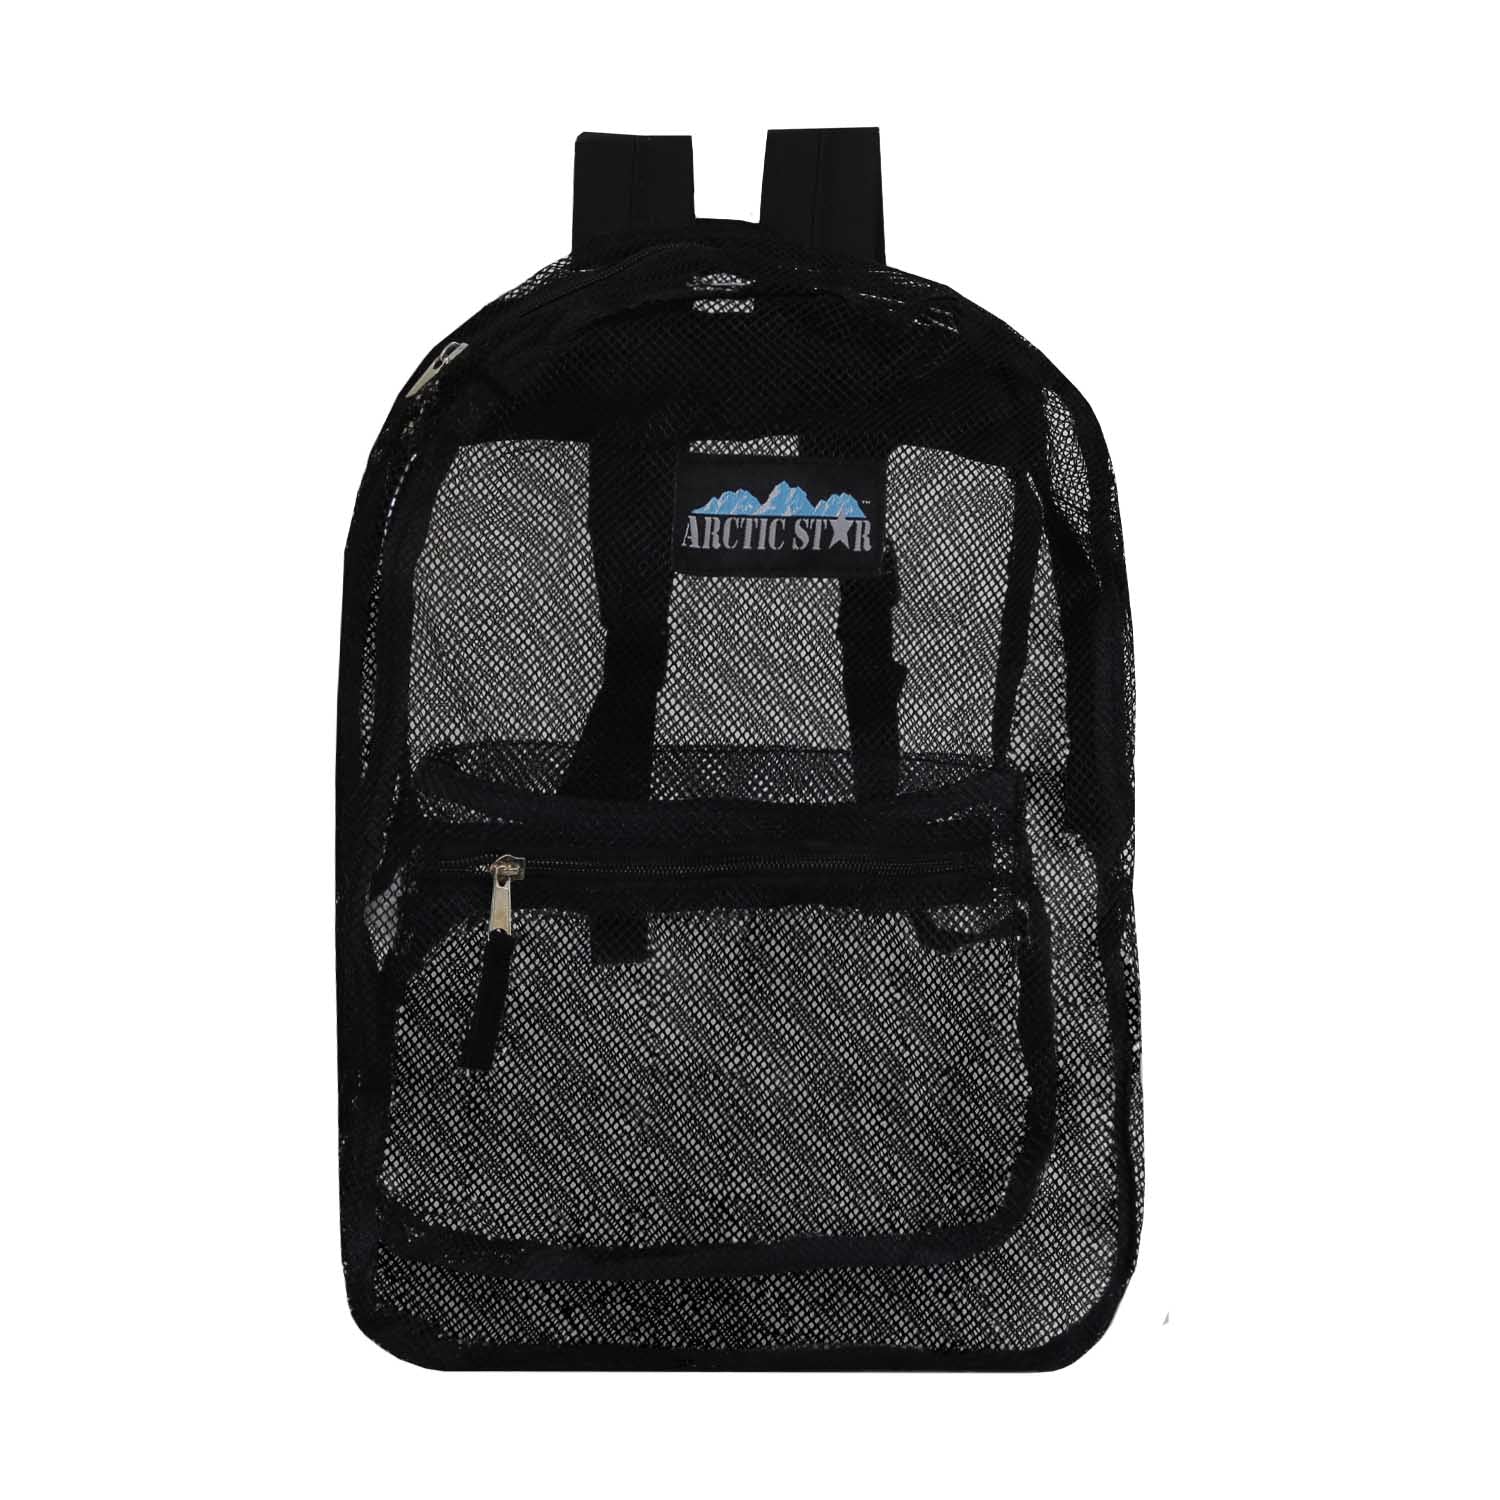 Buy 17" See Through Mesh Backpacks - Black -Wholesale Case of 24 Bookbags